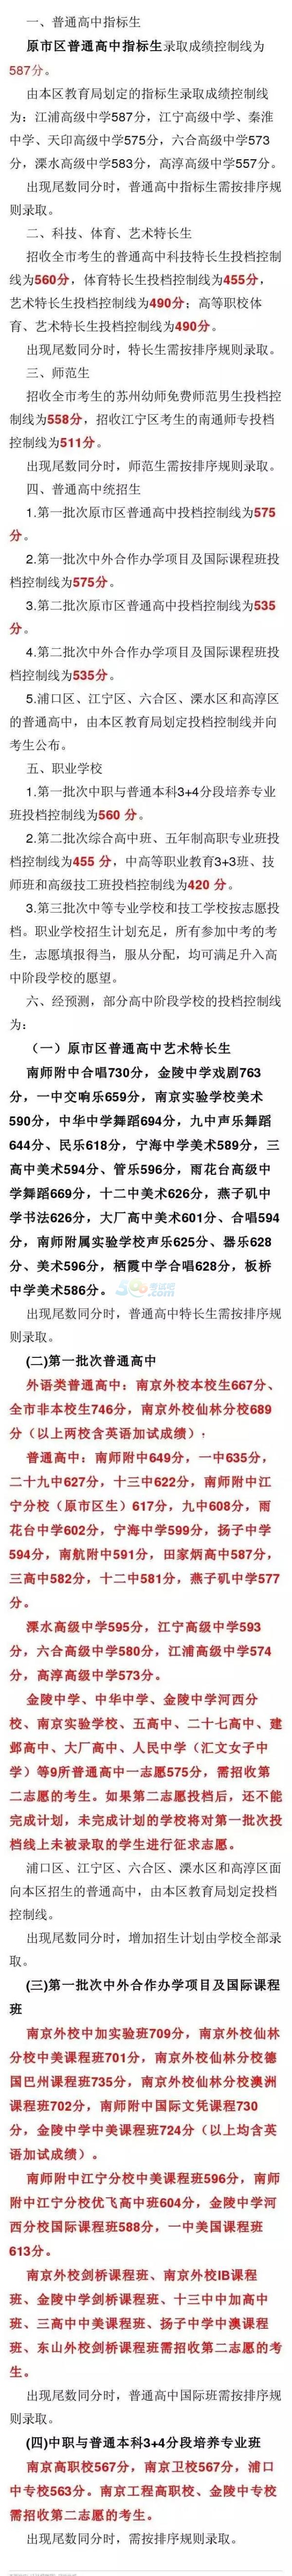 2016年南京中考录取分数线出炉